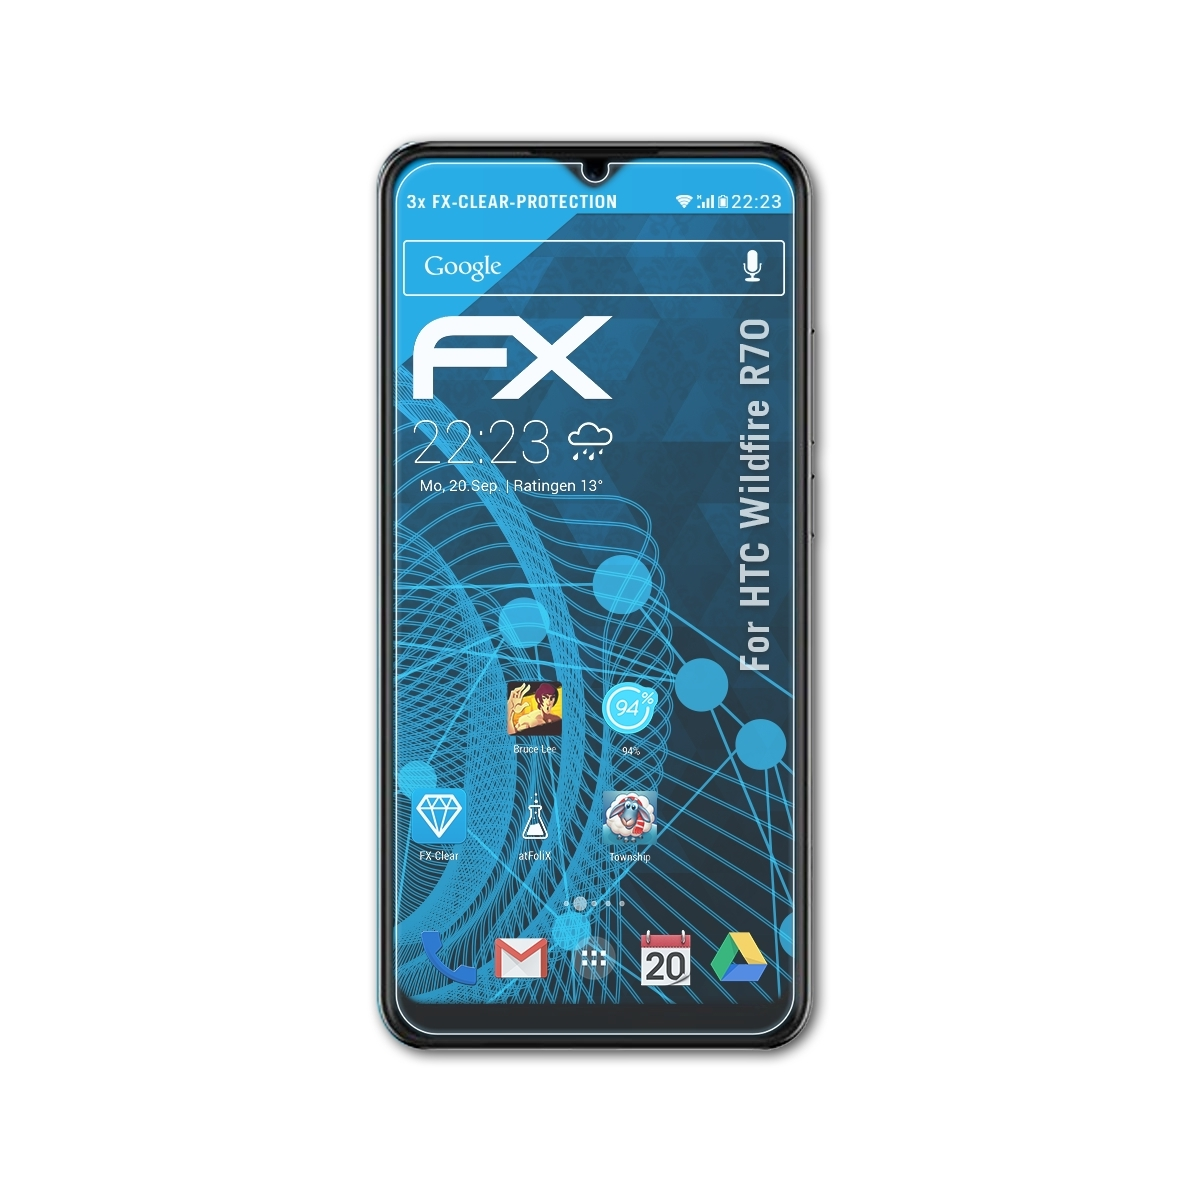 ATFOLIX 3x Wildfire R70) HTC FX-Clear Displayschutz(für